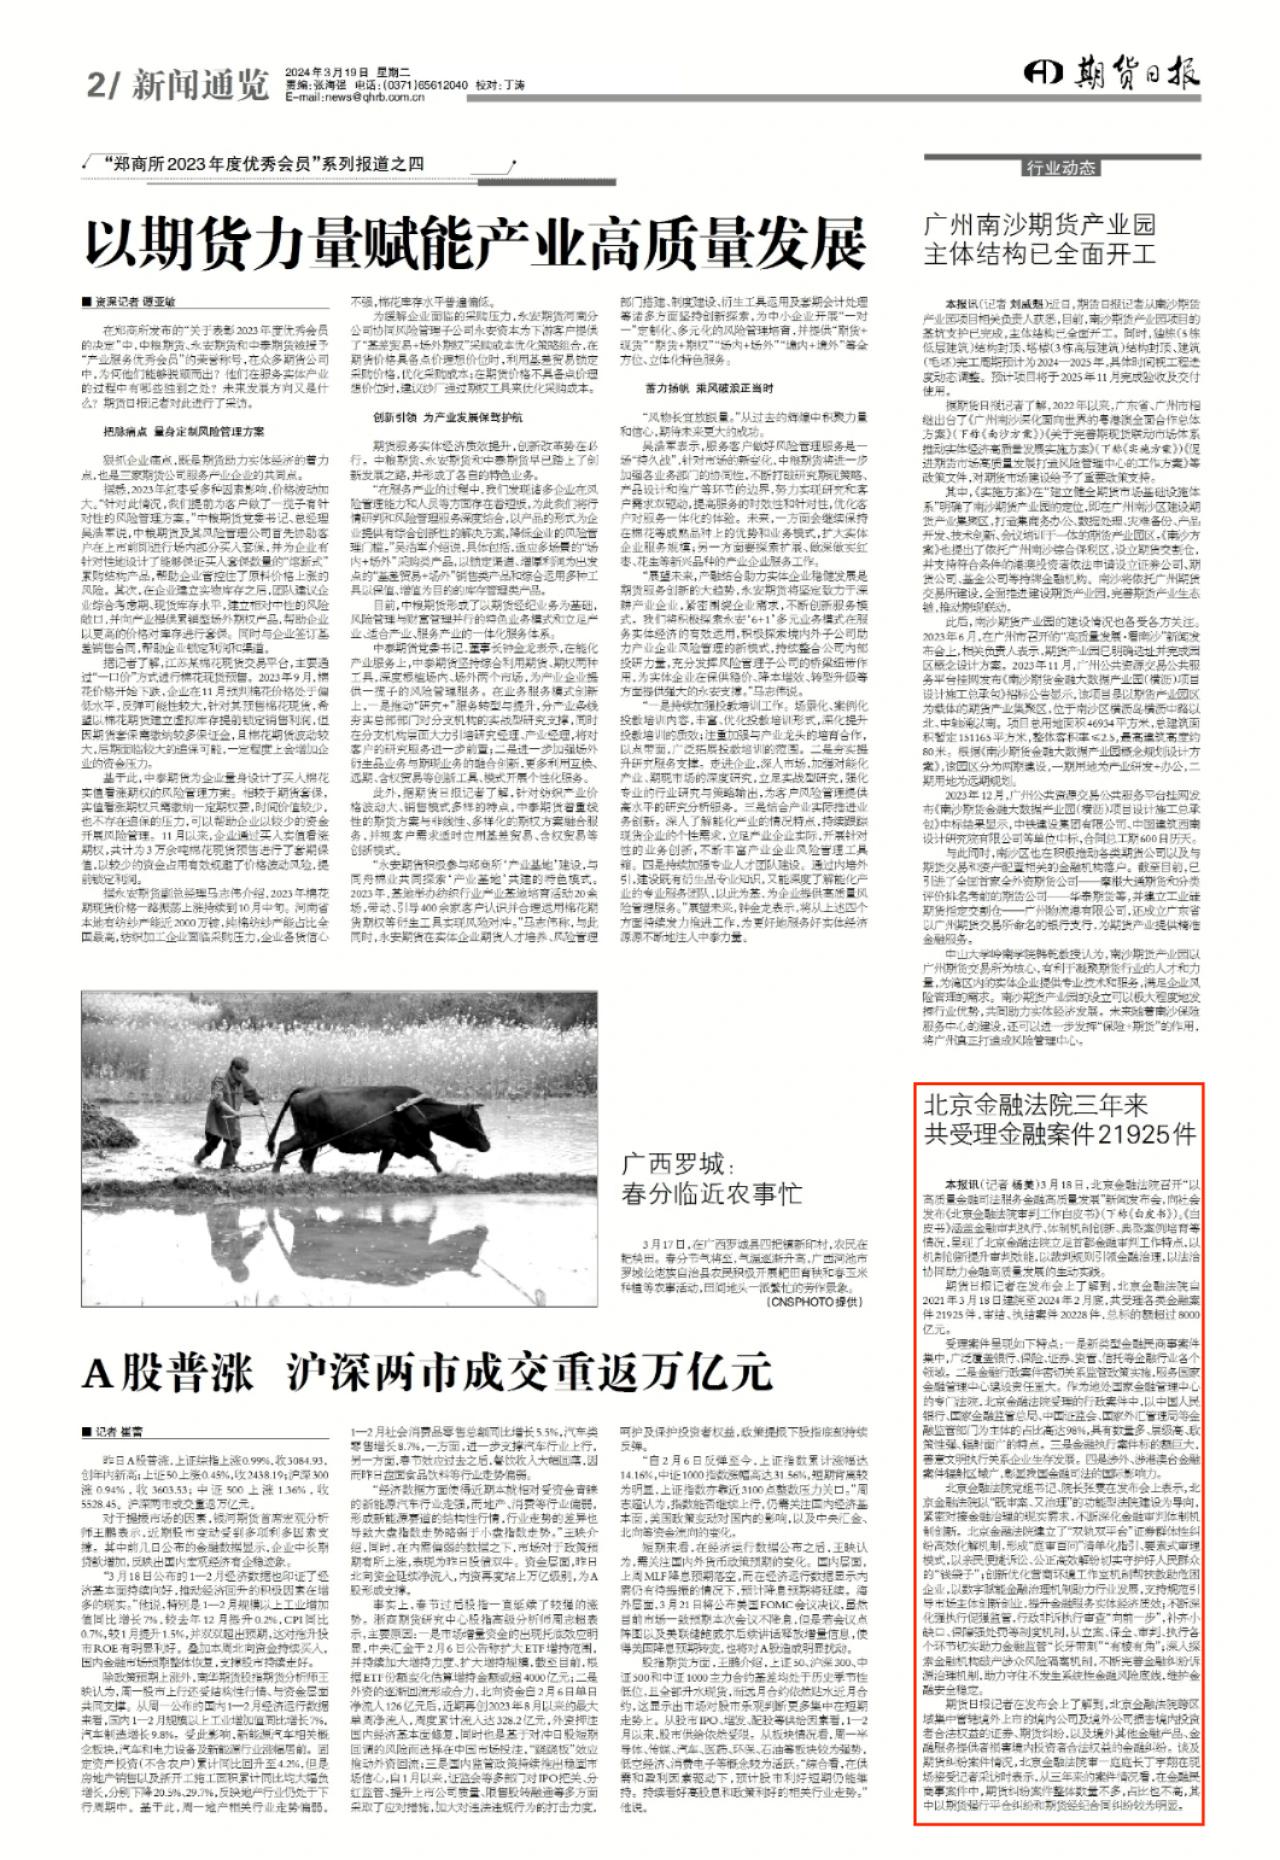 3.19期货日报：北京金融法院三年来共受理金融案件21925件.jpg